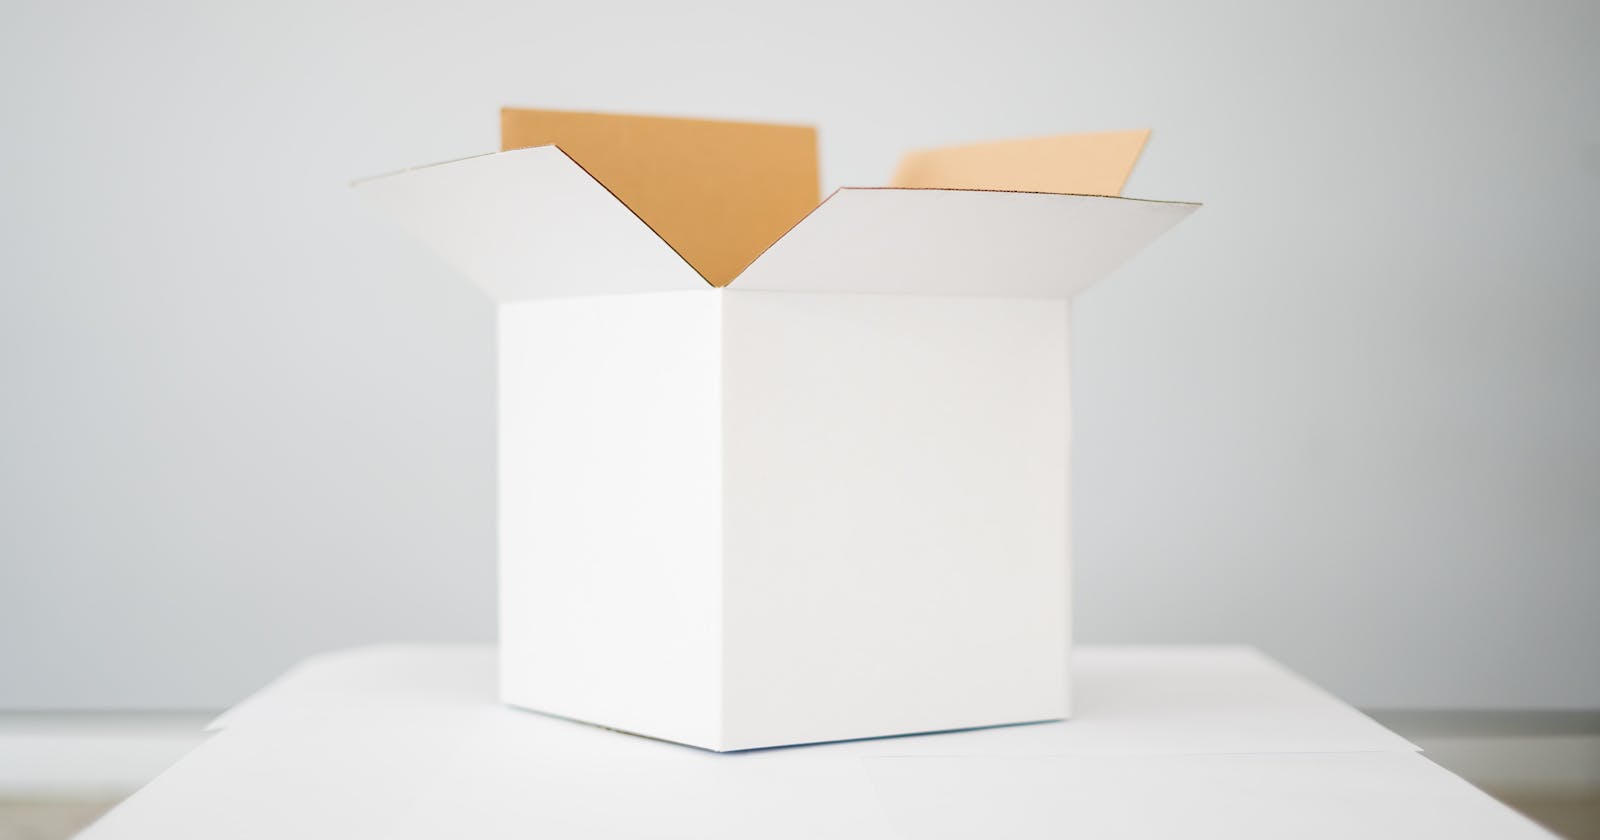 Understanding The Box Model in CSS